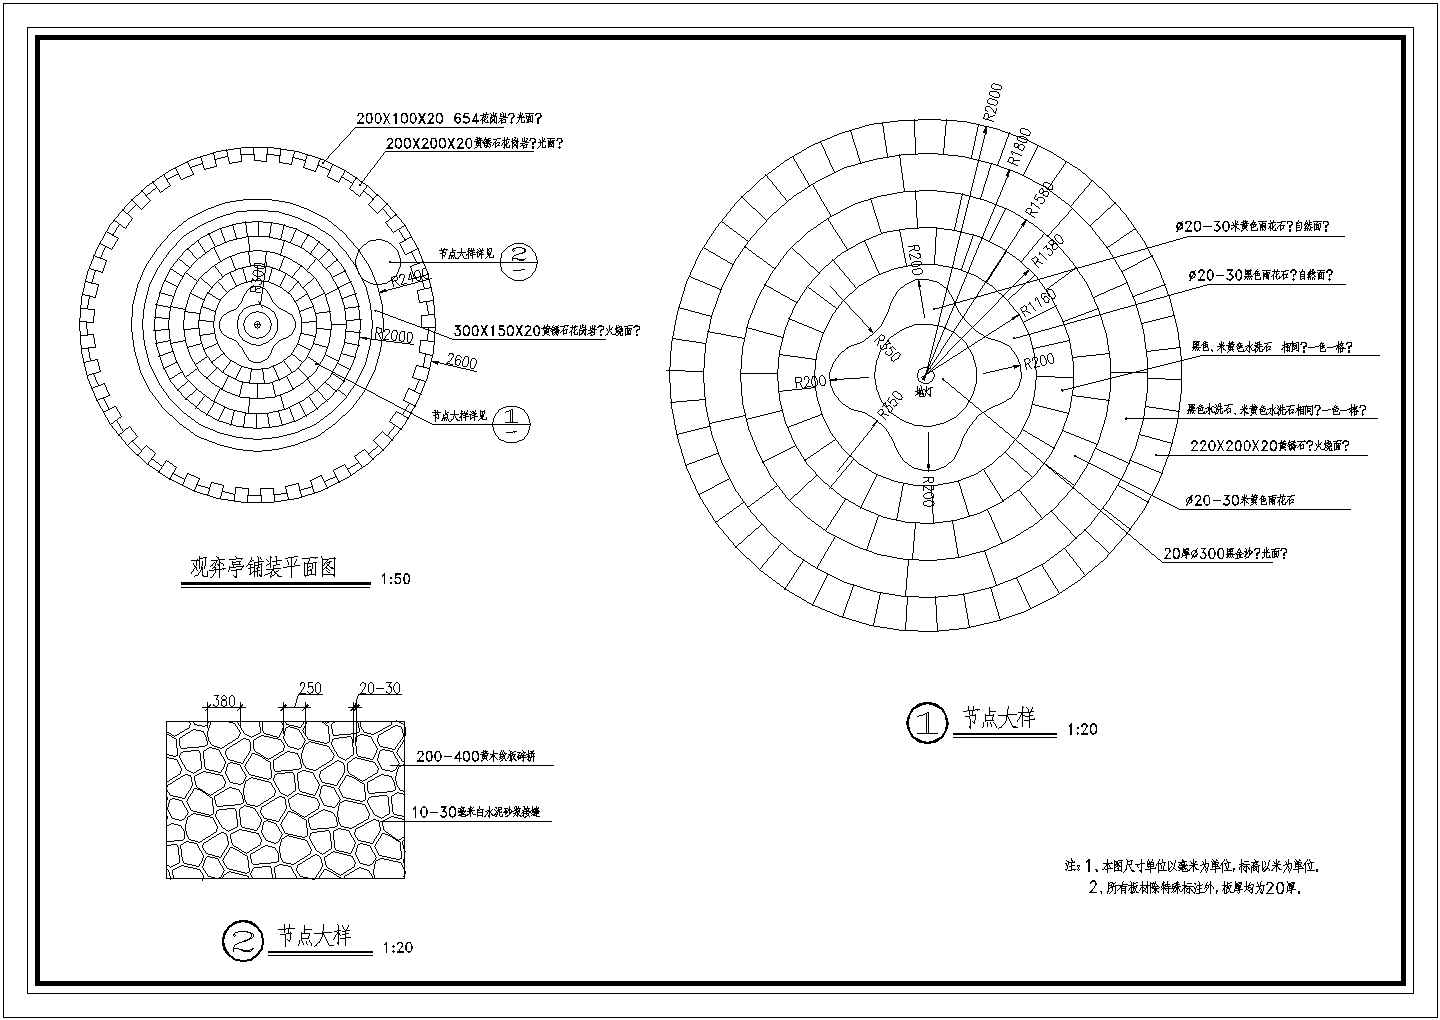 旭日海湾中庭景观设计cad图纸(含道路剖面图，照明平面布置总图)